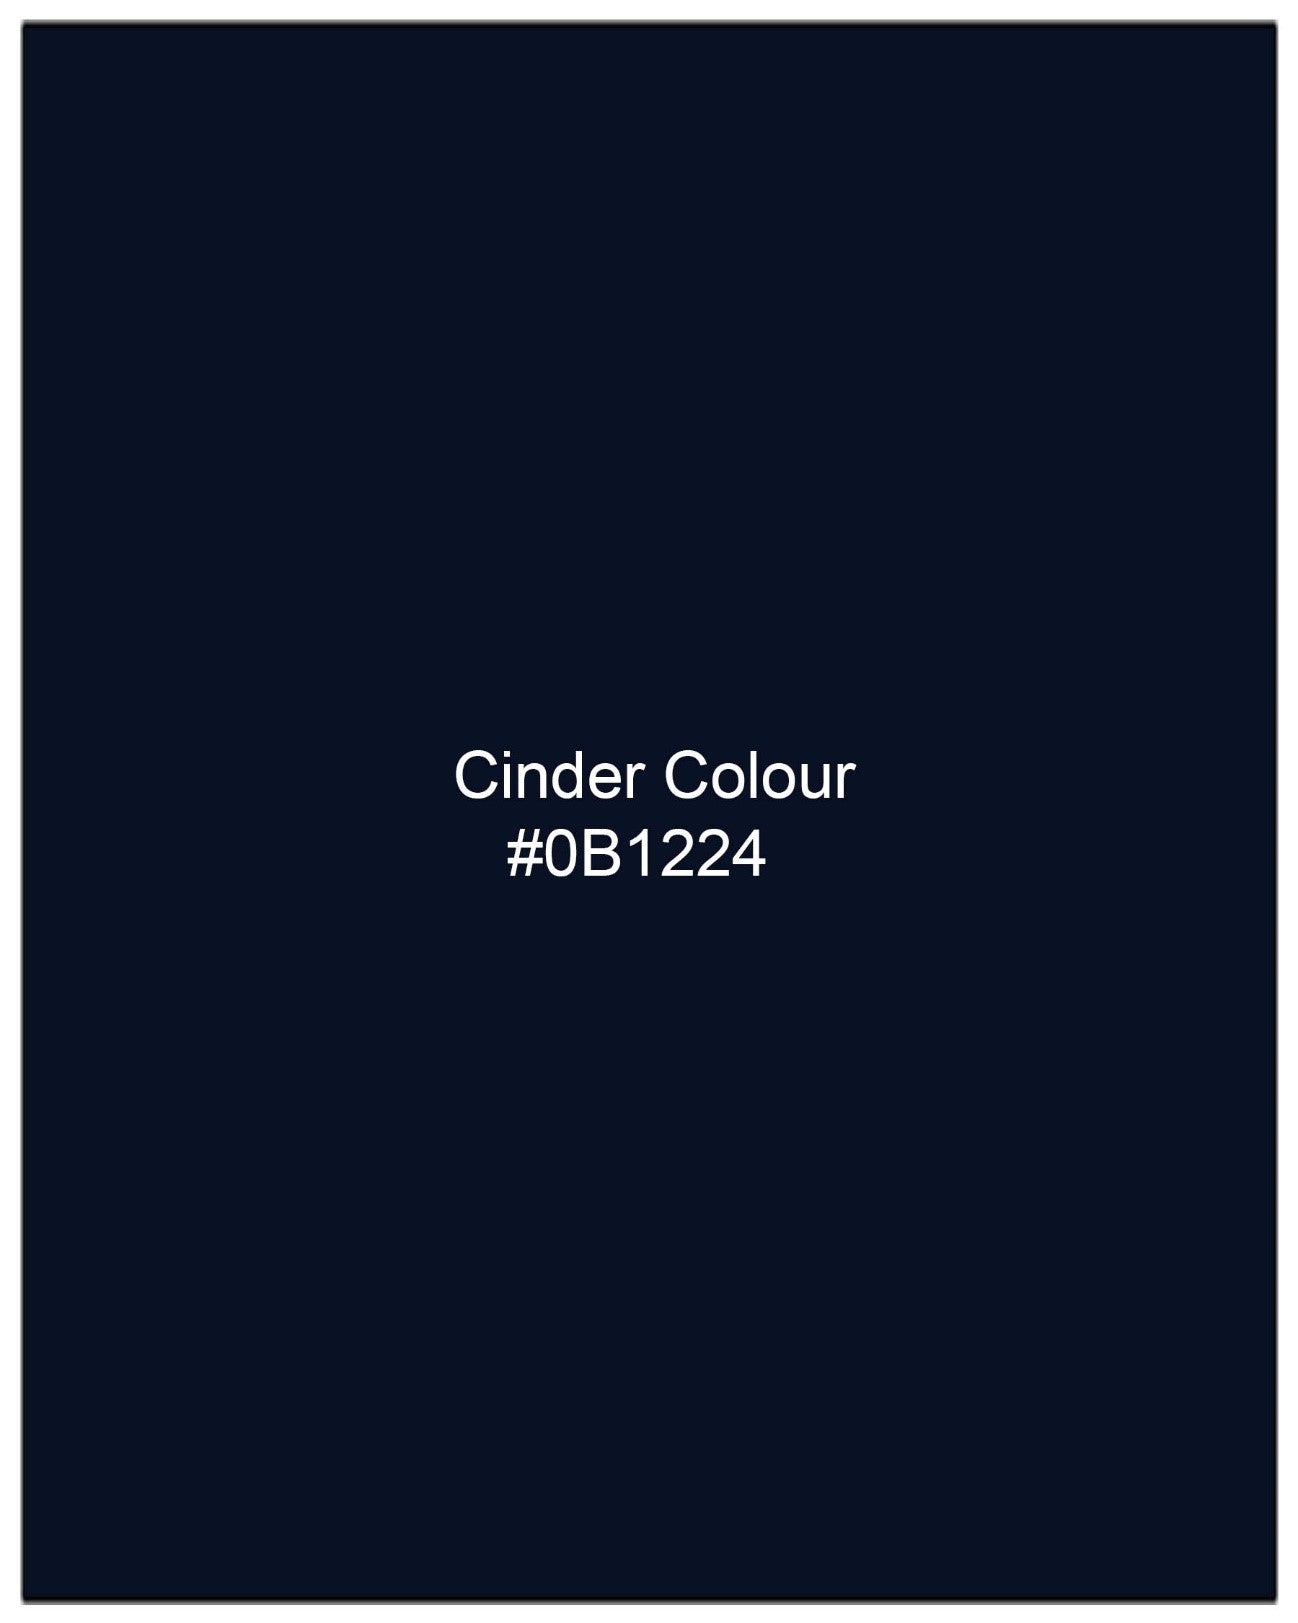 Cinder Blue Organic Cotton Pique Polo TS590-S, TS590-M, TS590-L, TS590-XL, TS590-XXL, TS590-3XL, TS590-4XL